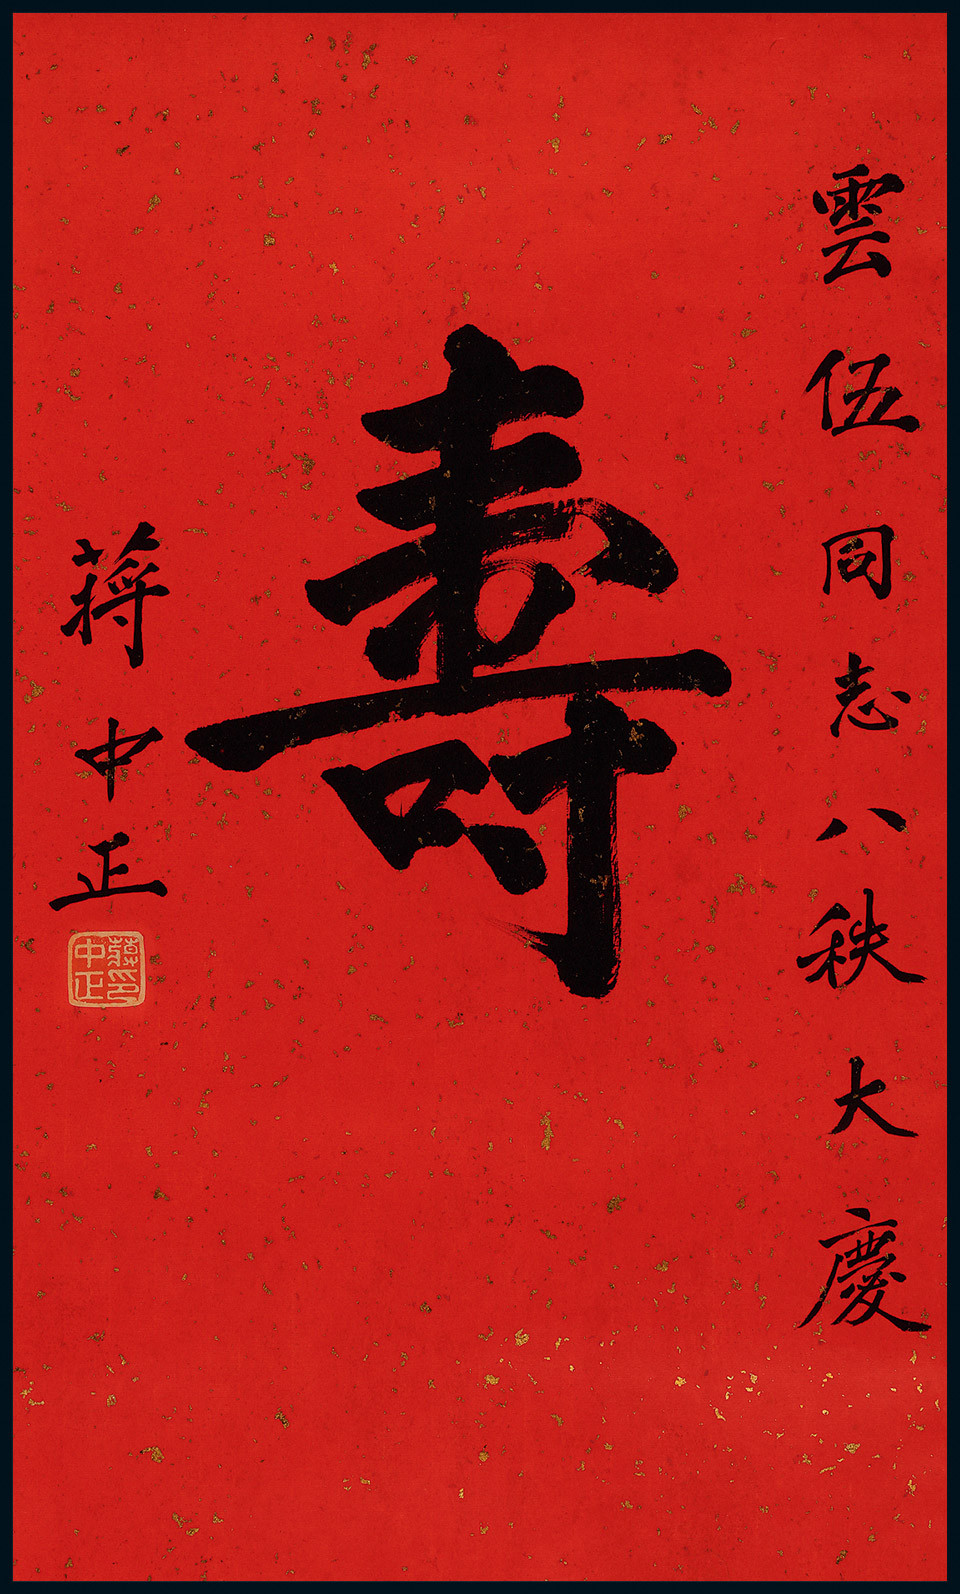 The “Longevity” in Chinese calligraphy by Jiang Zhongzheng